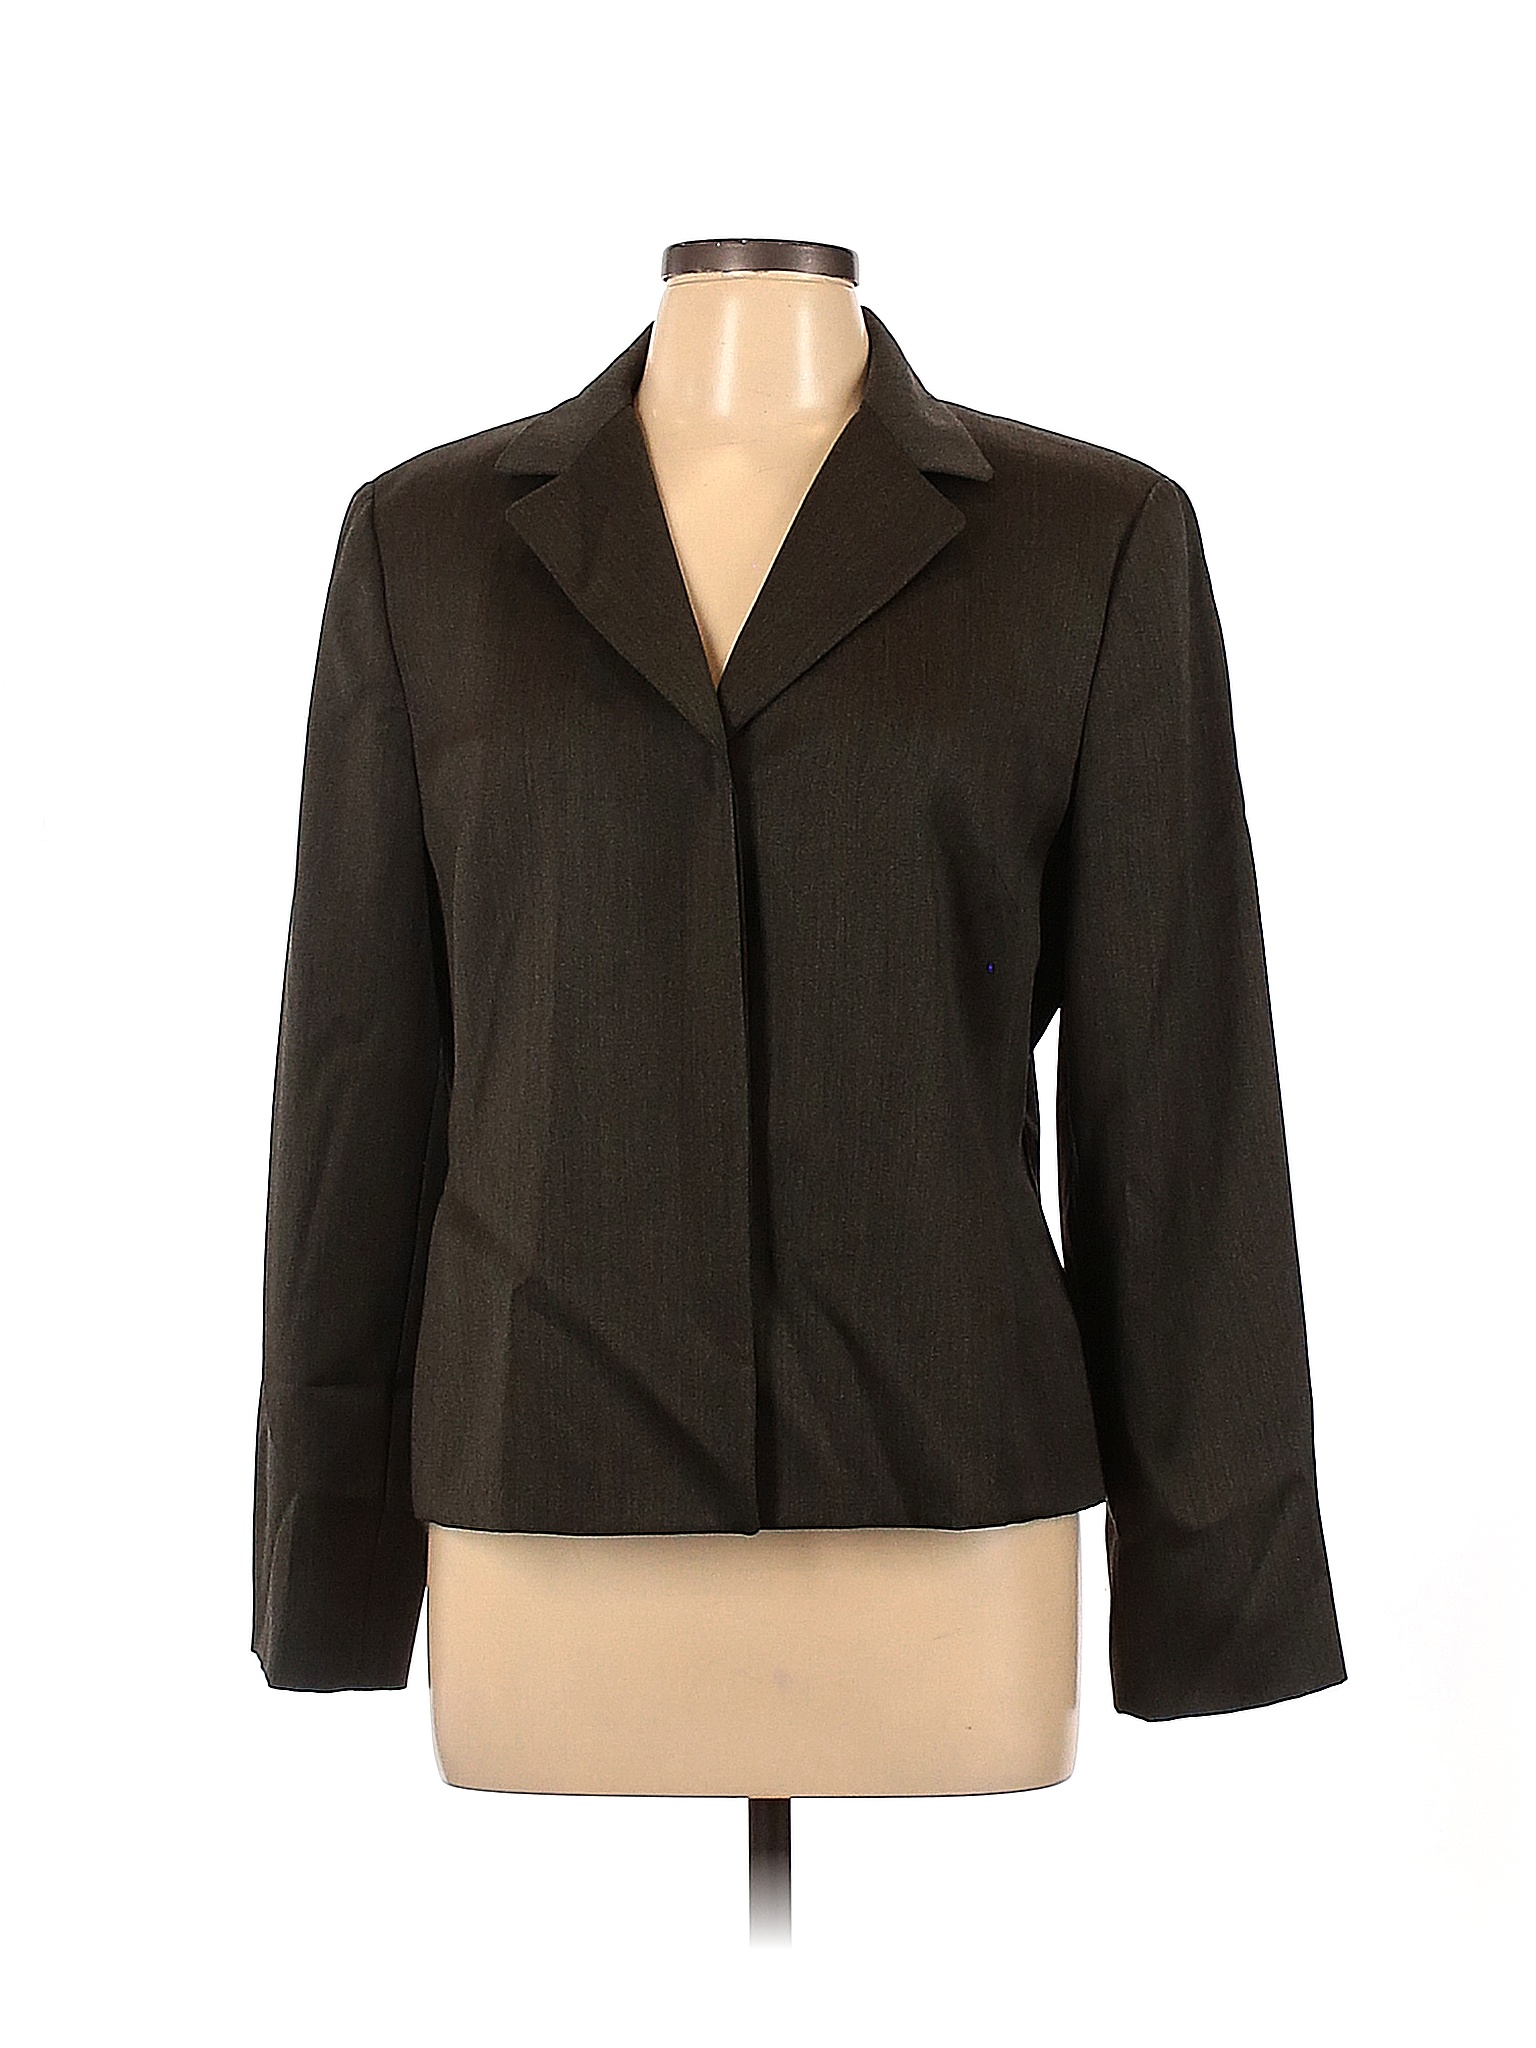 Linda Allard Ellen Tracy 100% Wool Black Green Wool Blazer Size 14 - 90 ...